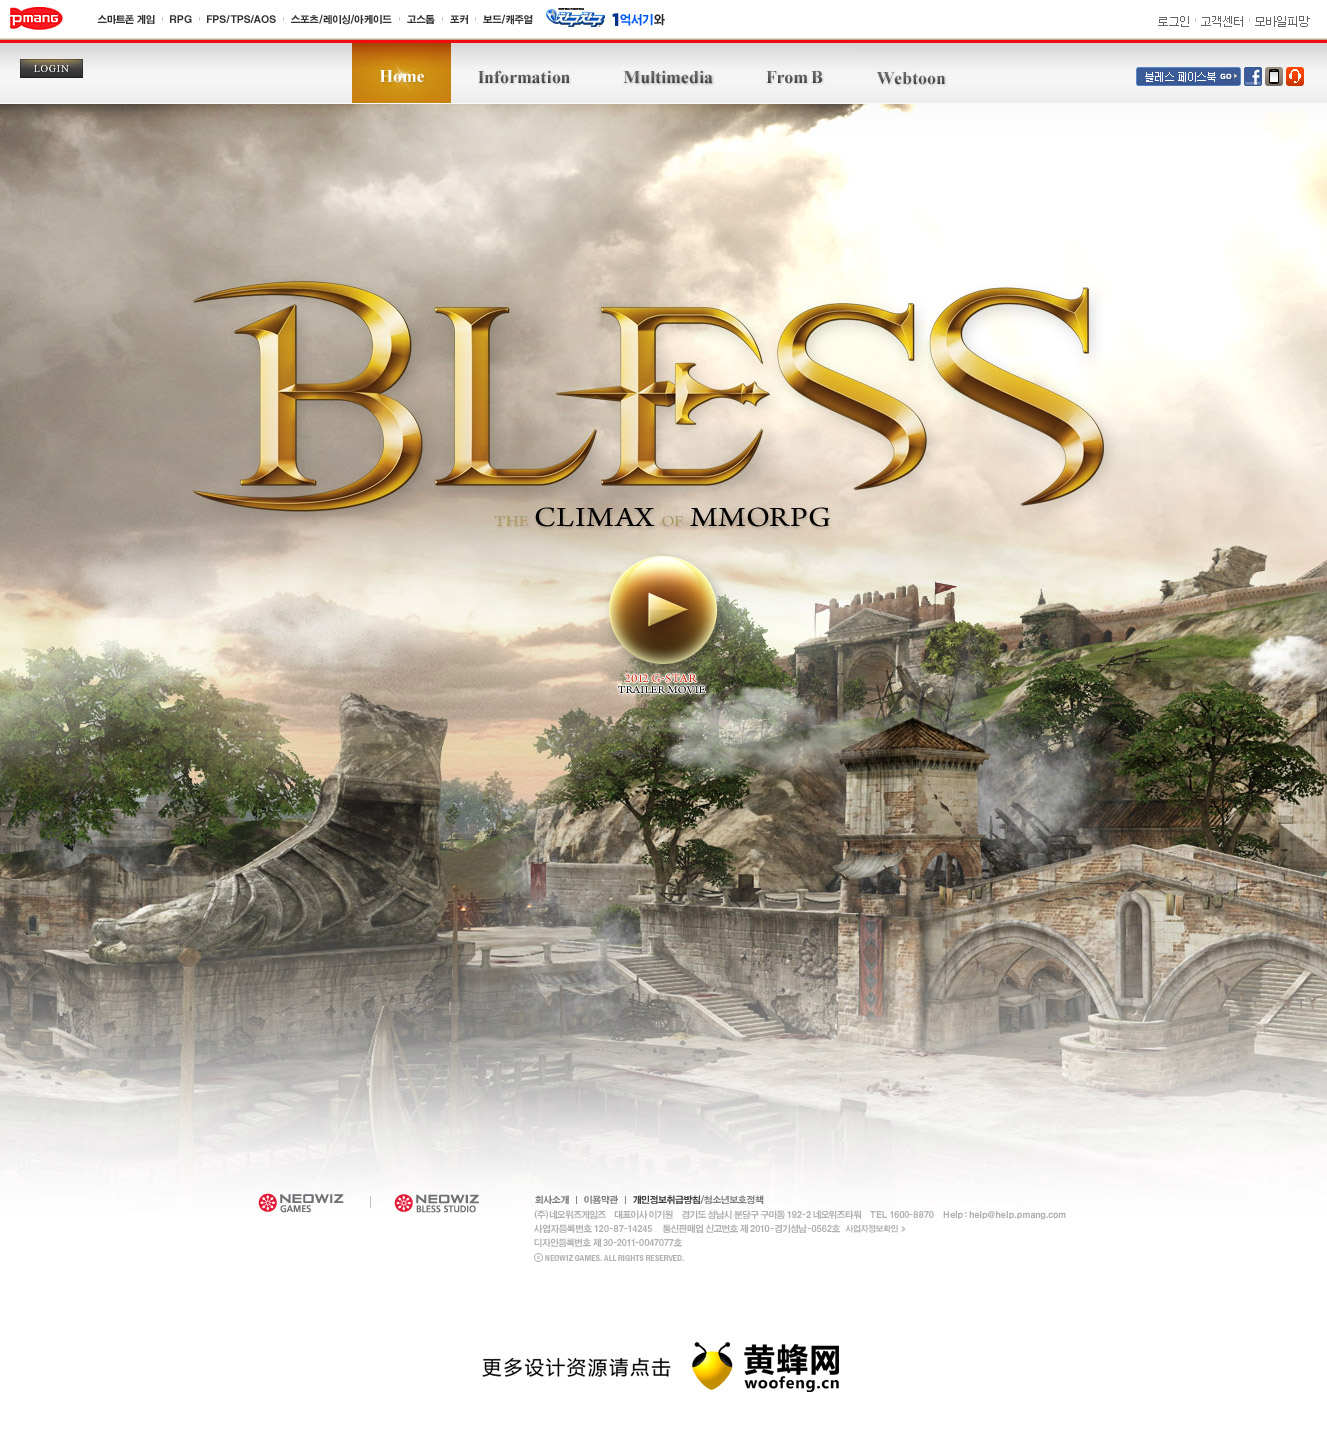 BLESS韩国游戏网站，来源自黄蜂网https://woofeng.cn/